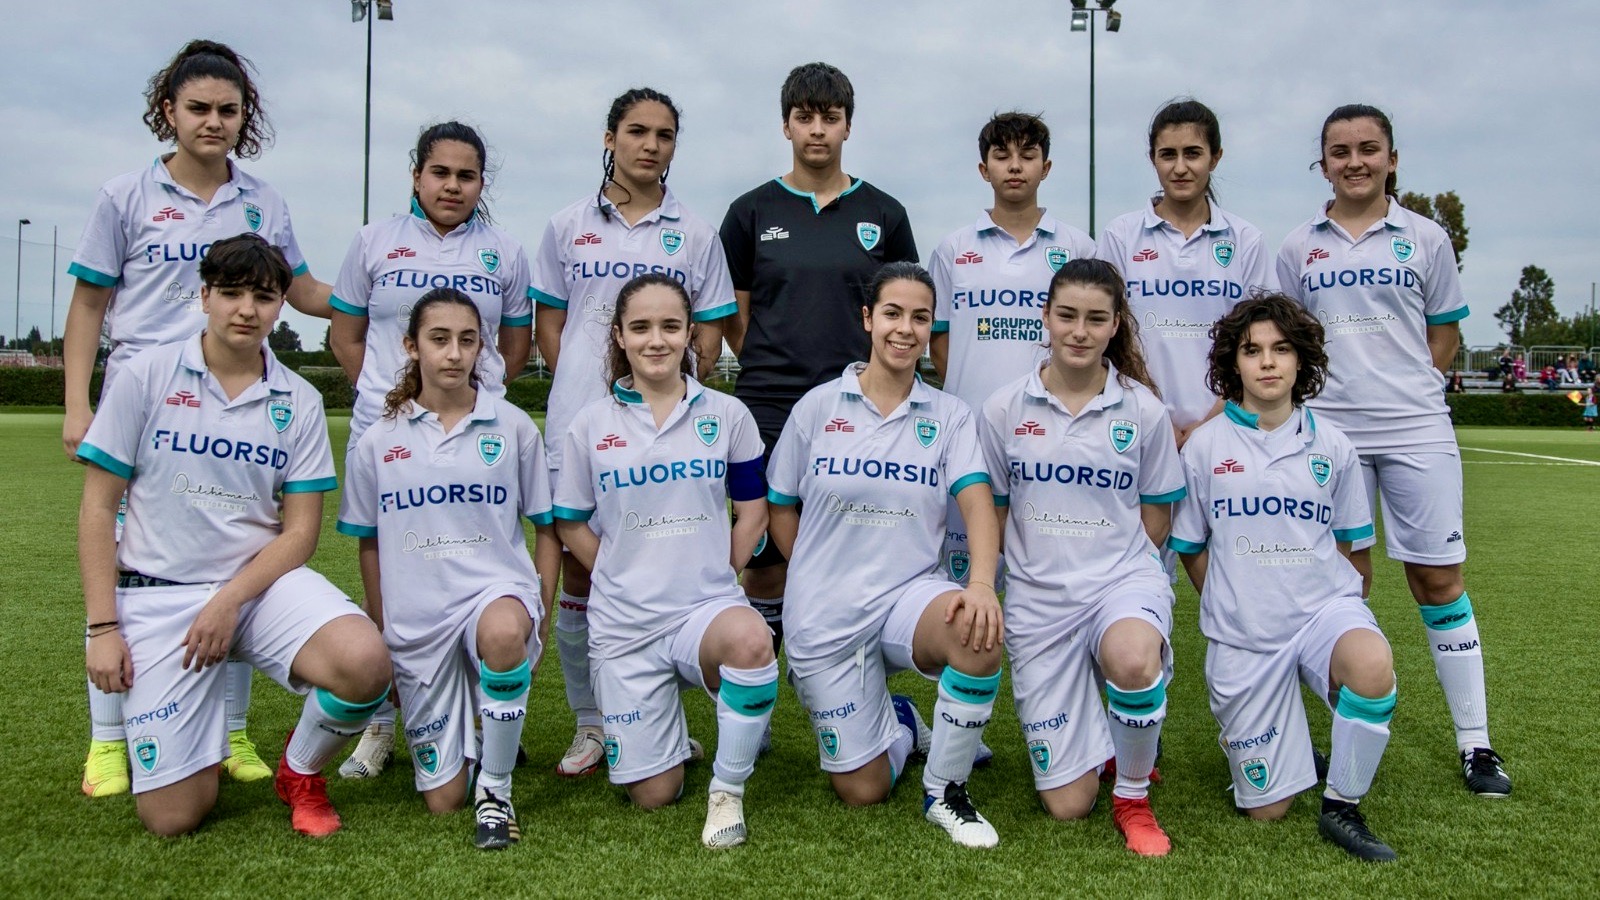 Olbia calcio, la squadra femminile riparte dopo la pandemia: 